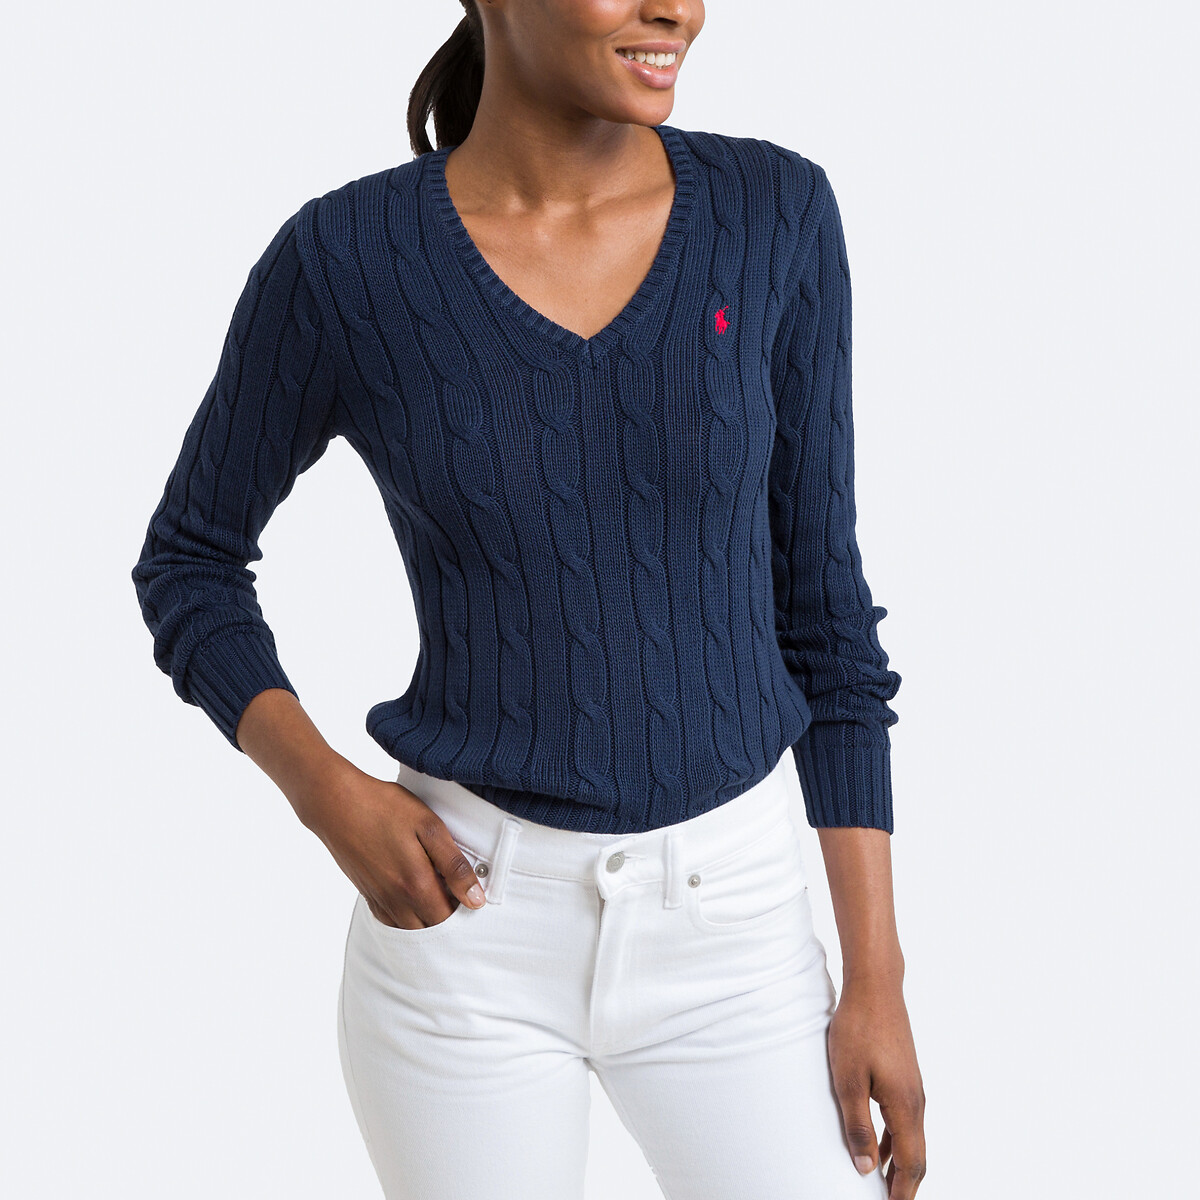 Пуловер с V-образным вырезом и витым узором XL синий пуловер с высоким воротником из трикотажа с витым узором